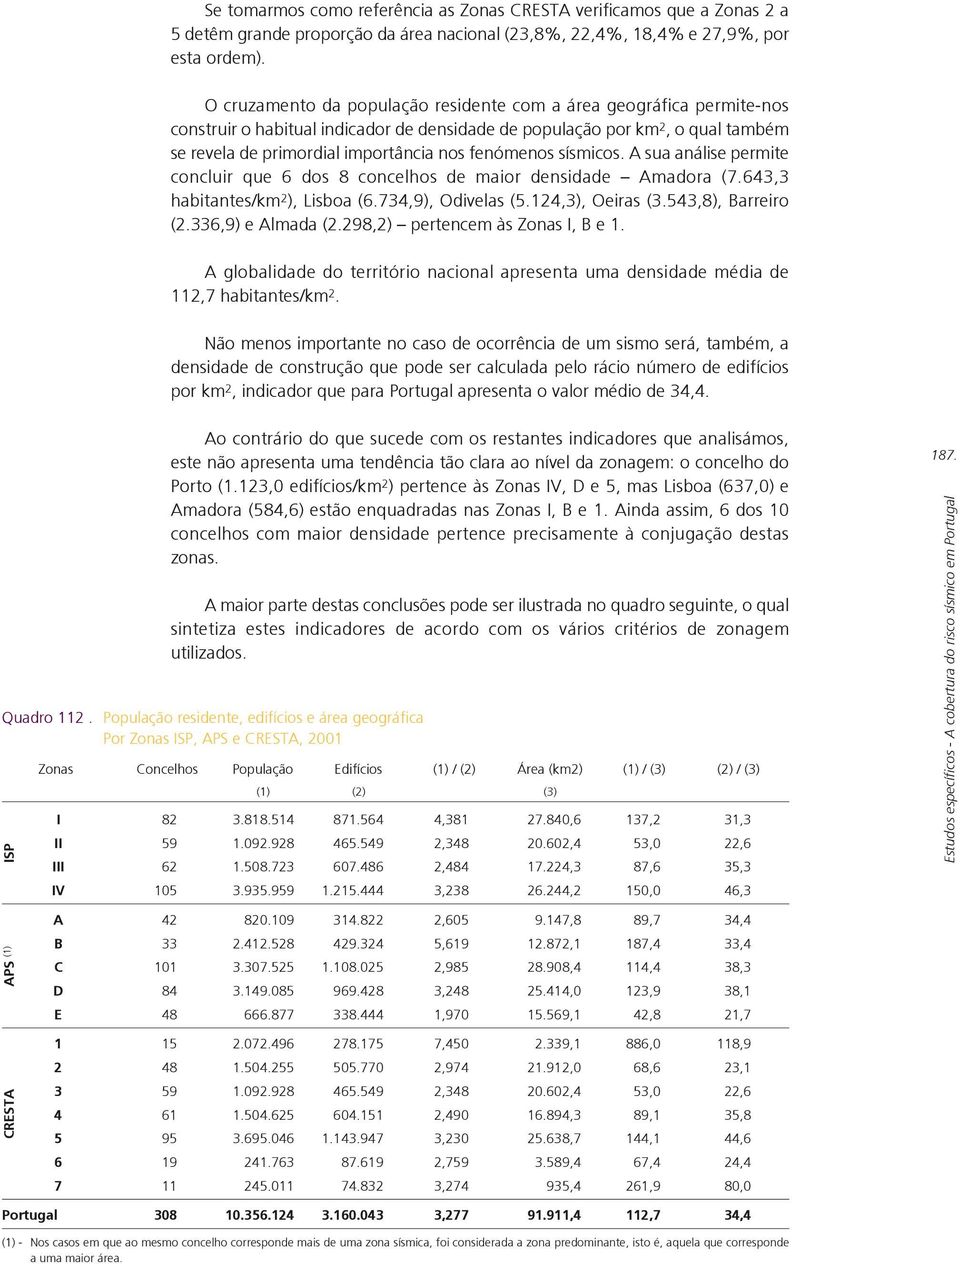 fenómenos sísmicos. A sua análise permite concluir que 6 dos 8 concelhos de maior densidade Amadora (7.643,3 habitantes/km 2 ), Lisboa (6.734,9), Odivelas (5.124,3), Oeiras (3.543,8), Barreiro (2.